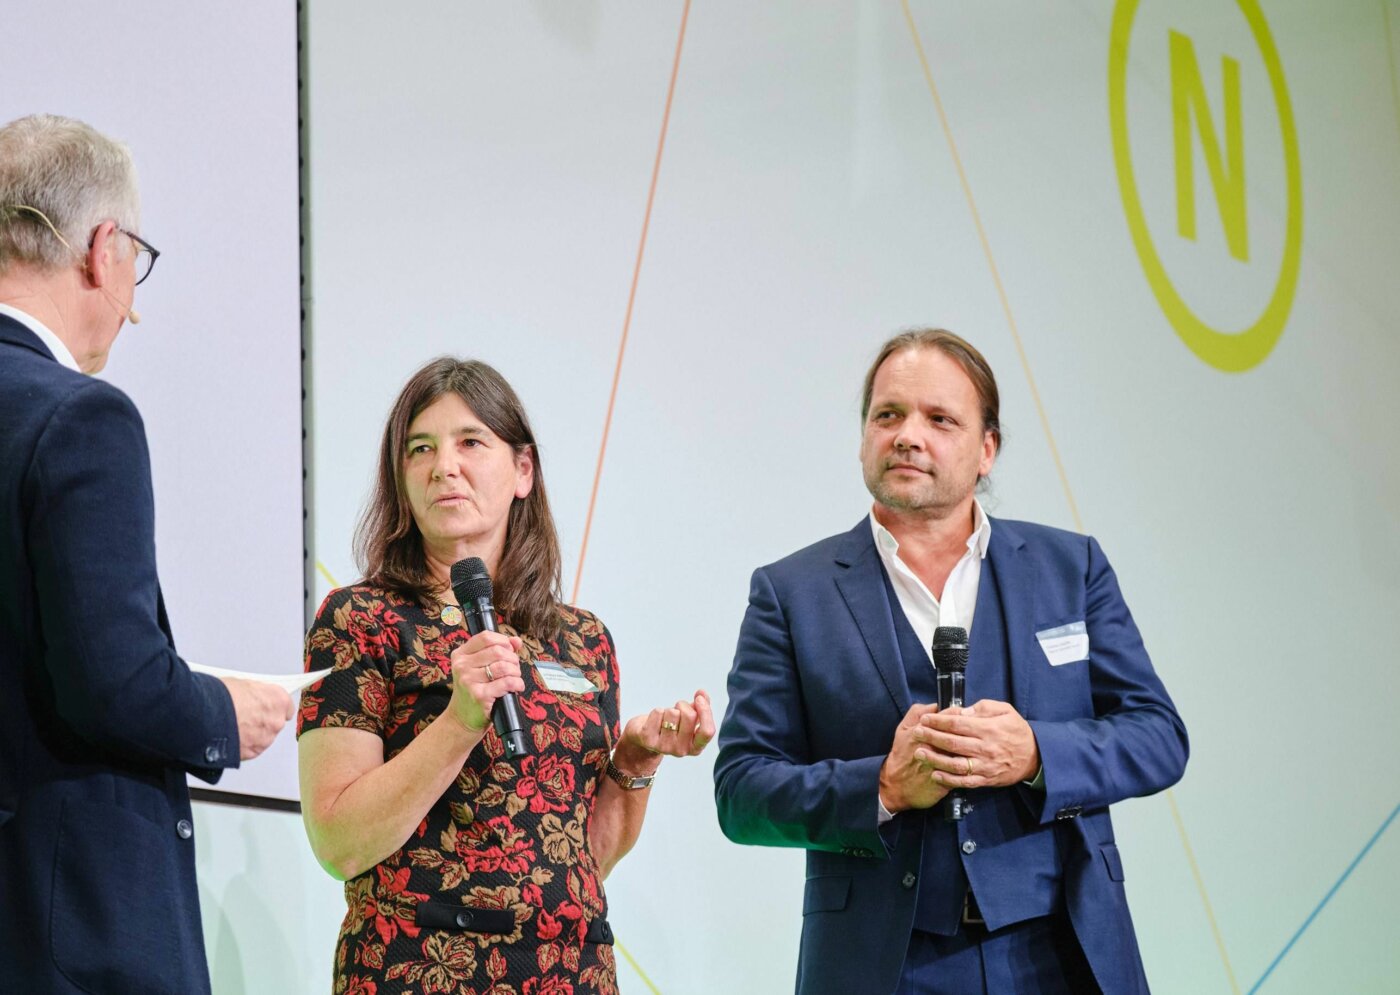 Auf der Bühne der 22. Jahreskonferenz des RNE wird ein Preis verliehen. RNE-Mitglied Dr. Werner Schnappauf spricht mit Johanna Köhnlein und Christian Lösche von HygCen, den beiden Gewinnern des Preises "Projekt Nachhaltigkeit".